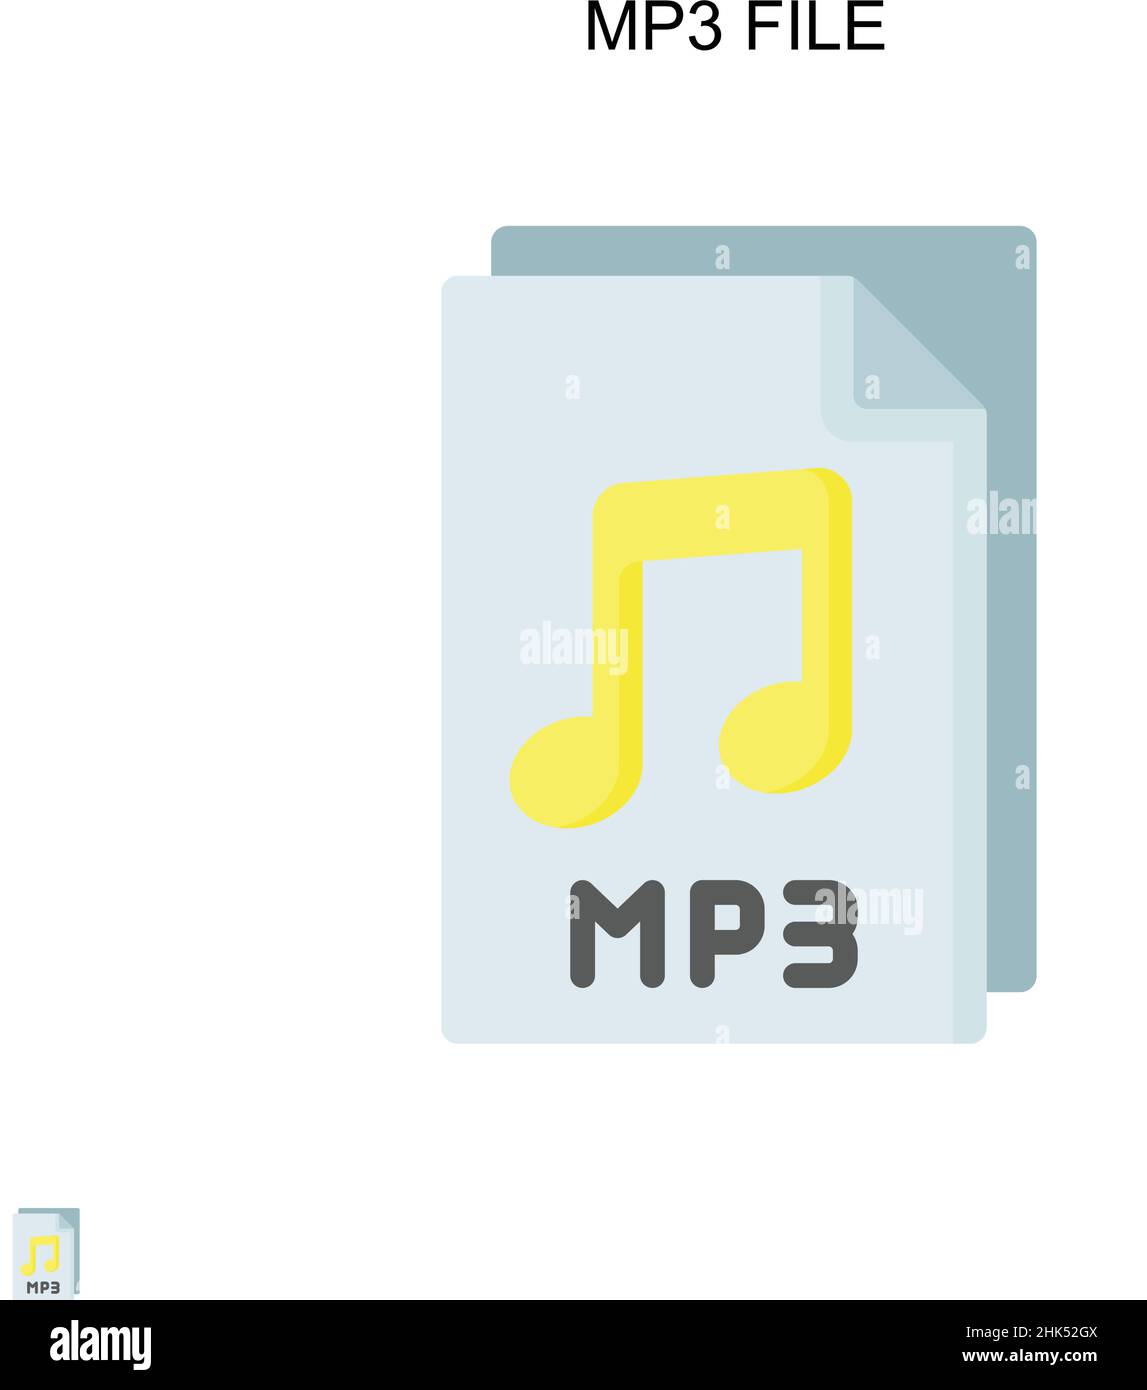 Audio mp3 file icon sign Banque d'images détourées - Alamy